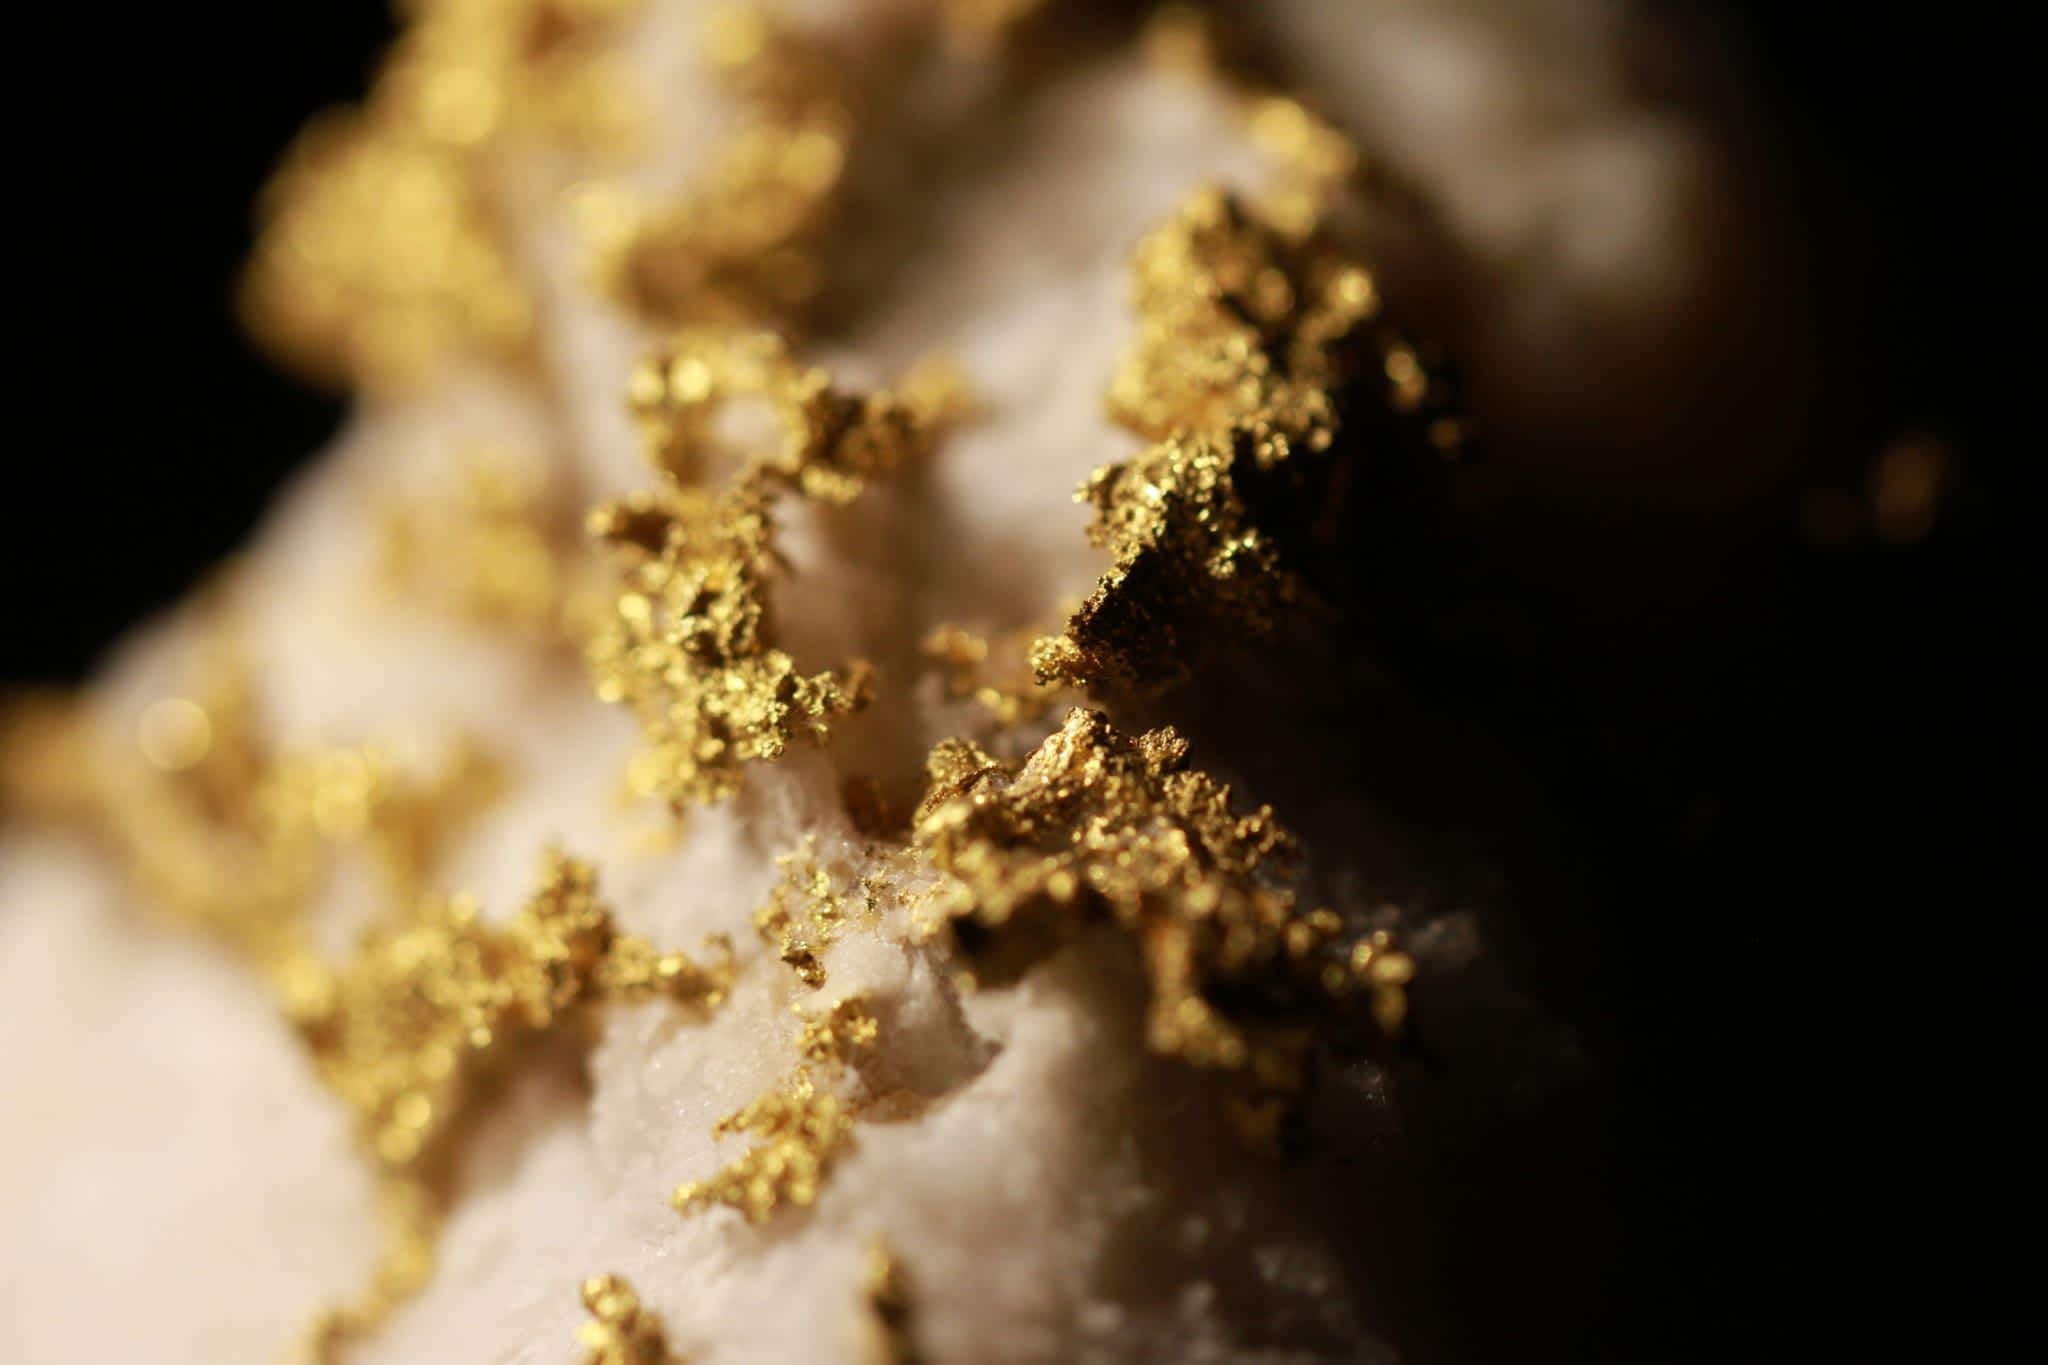 Rare Italian Crystalline Gold Quartz Nugget Specimen 191.00 Grams - Brussons Gold Mine